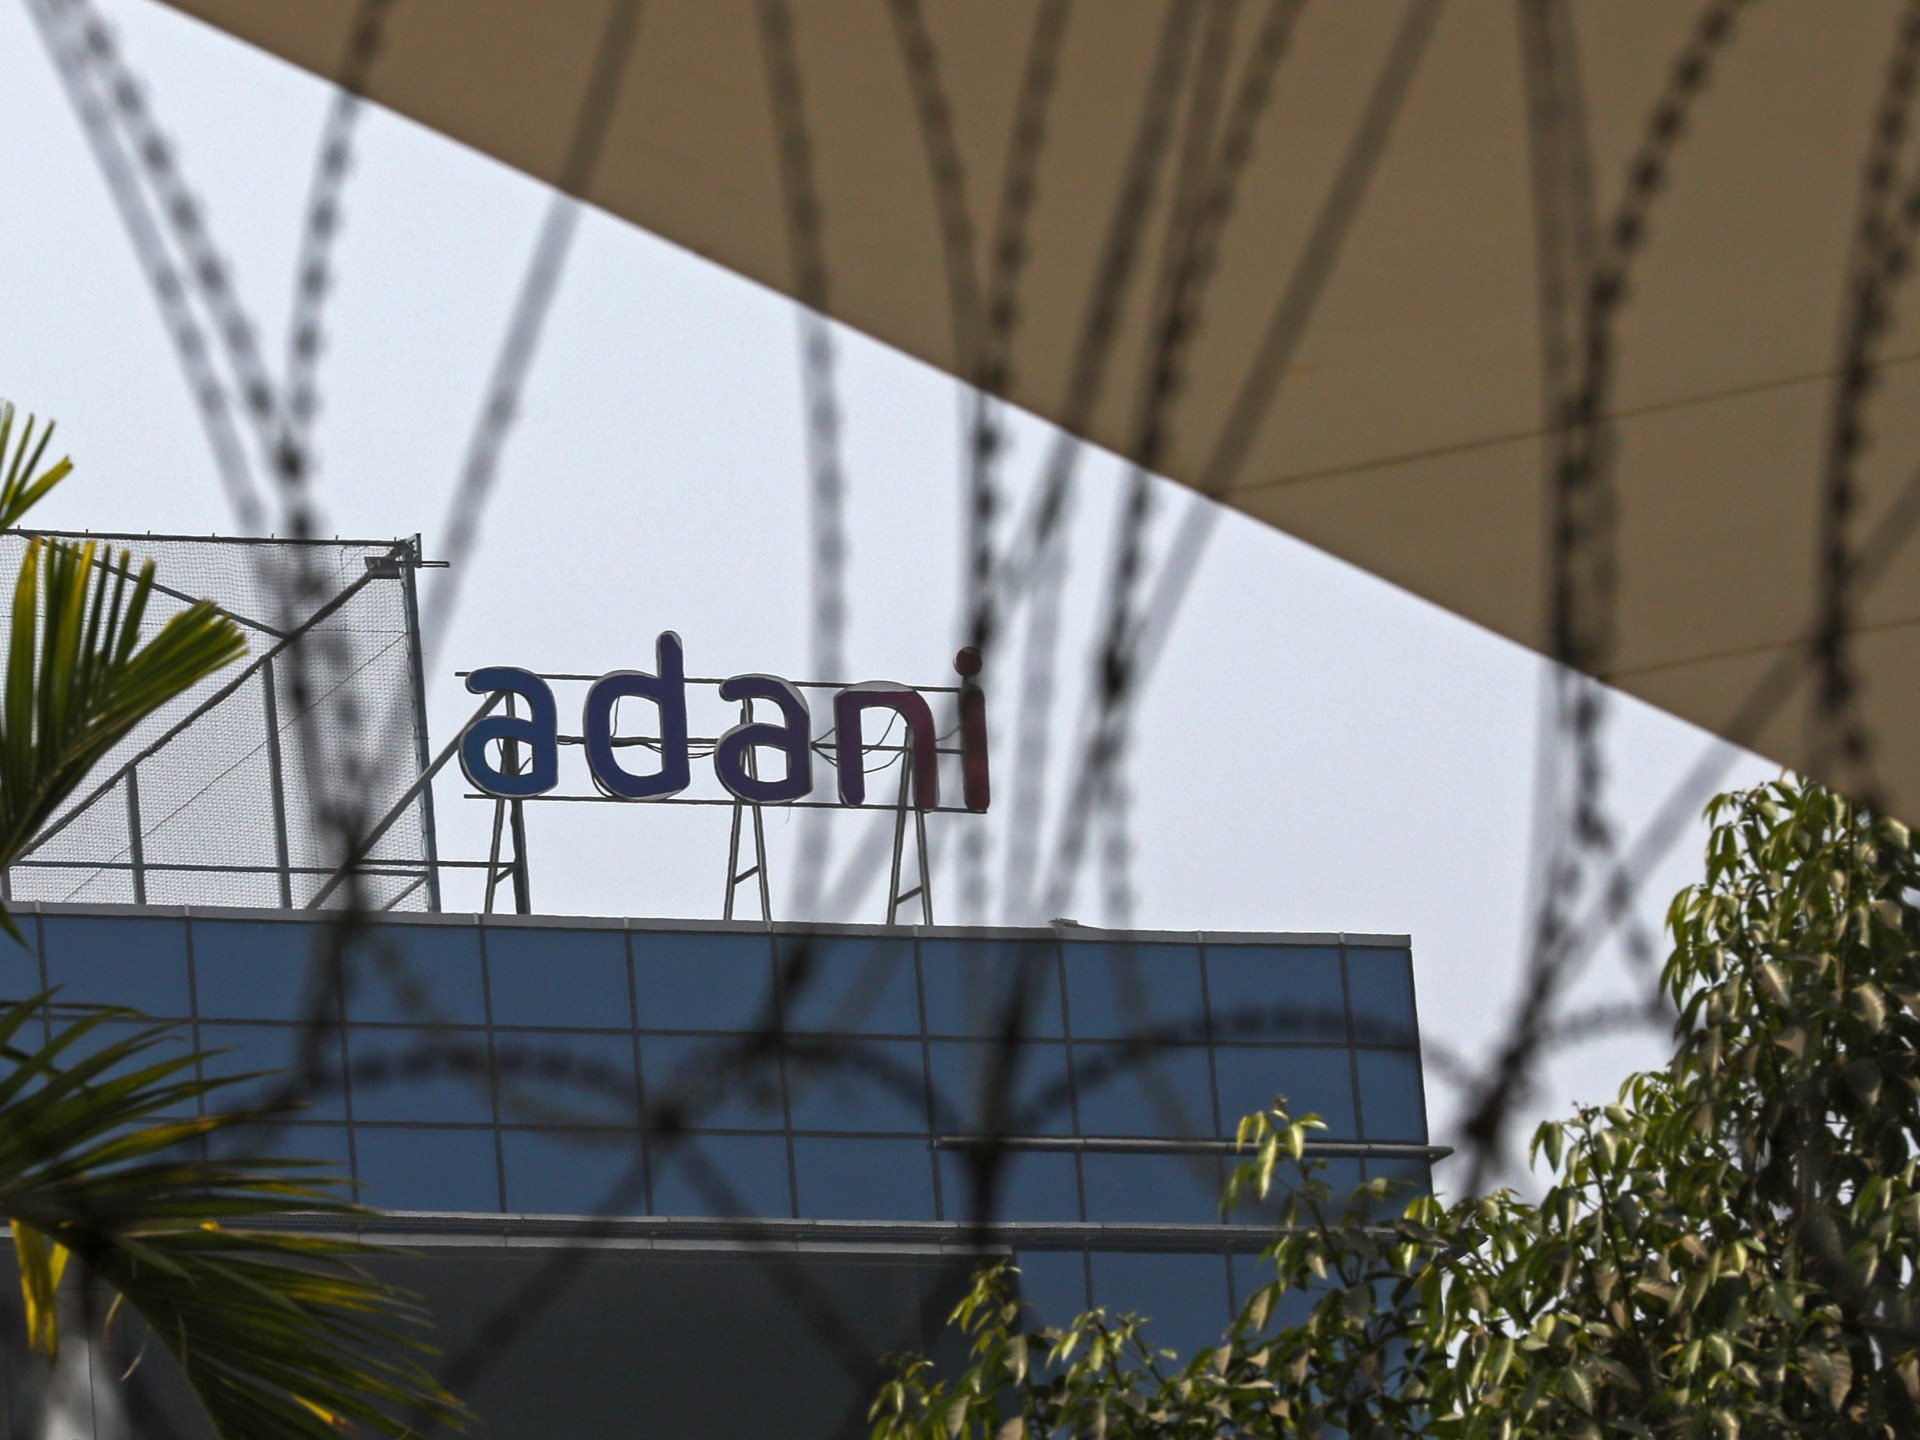 Le régulateur indien sonde les liens d’Adani avec les investisseurs |  Nouvelles des affaires et de l’économie